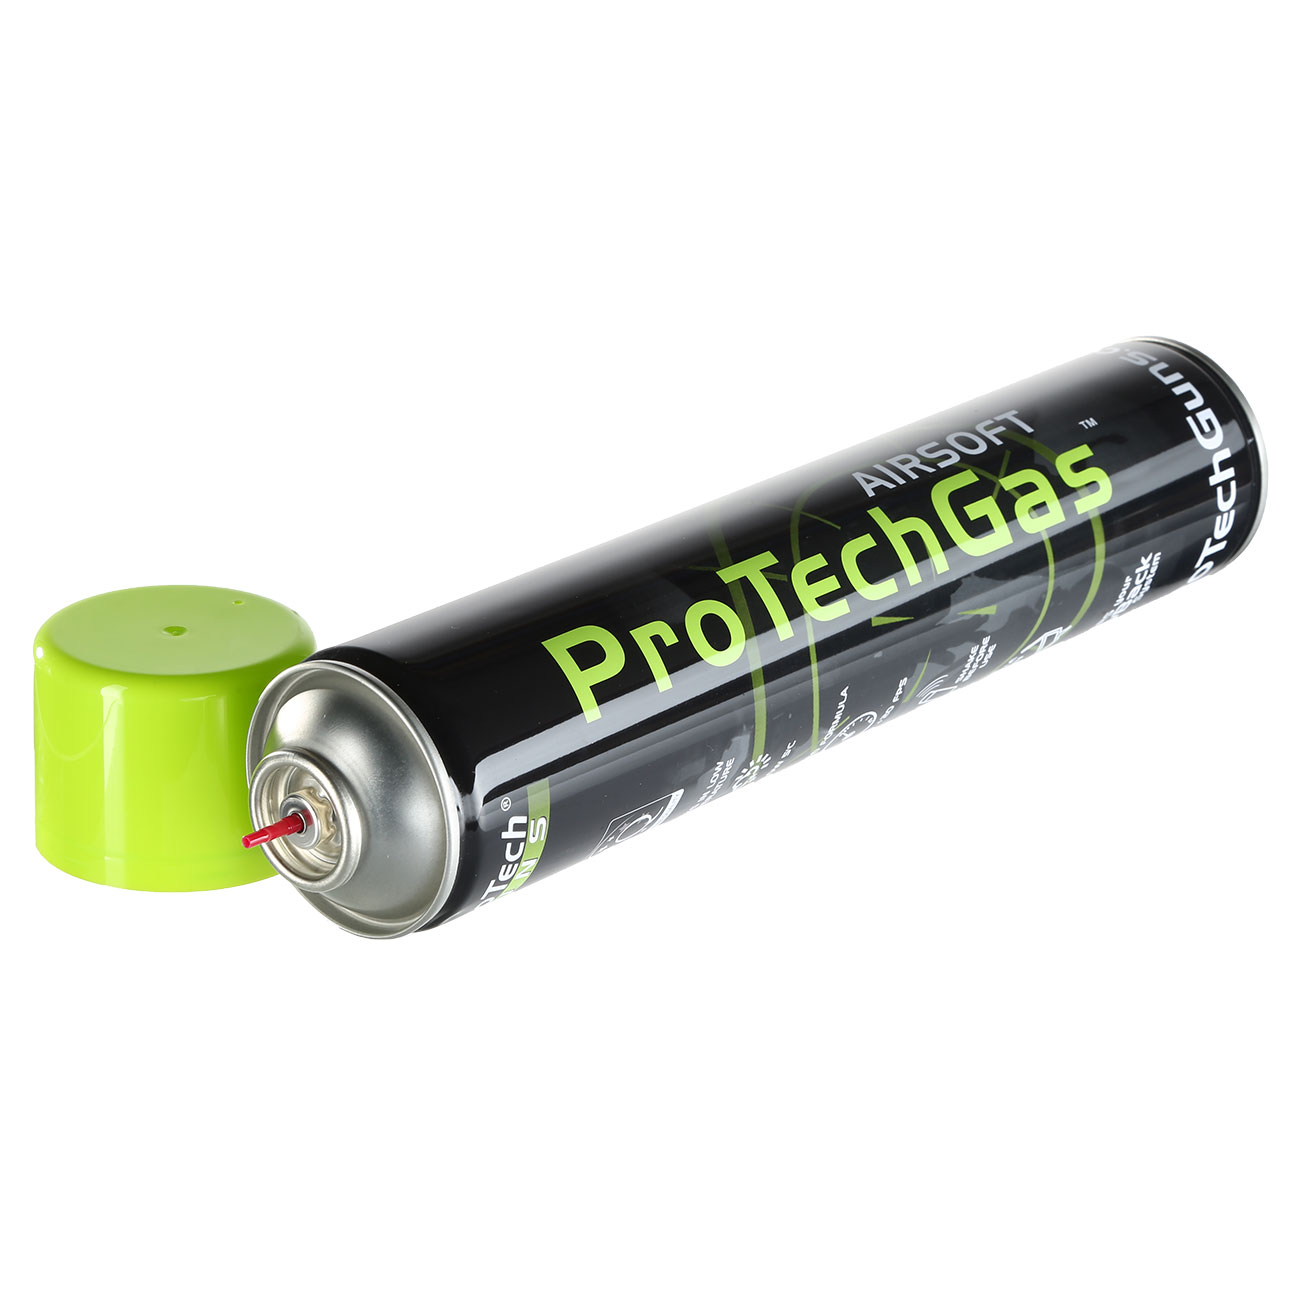 ProTech Guns Airsoft Green Gas 750 ml - New Version Bild 2